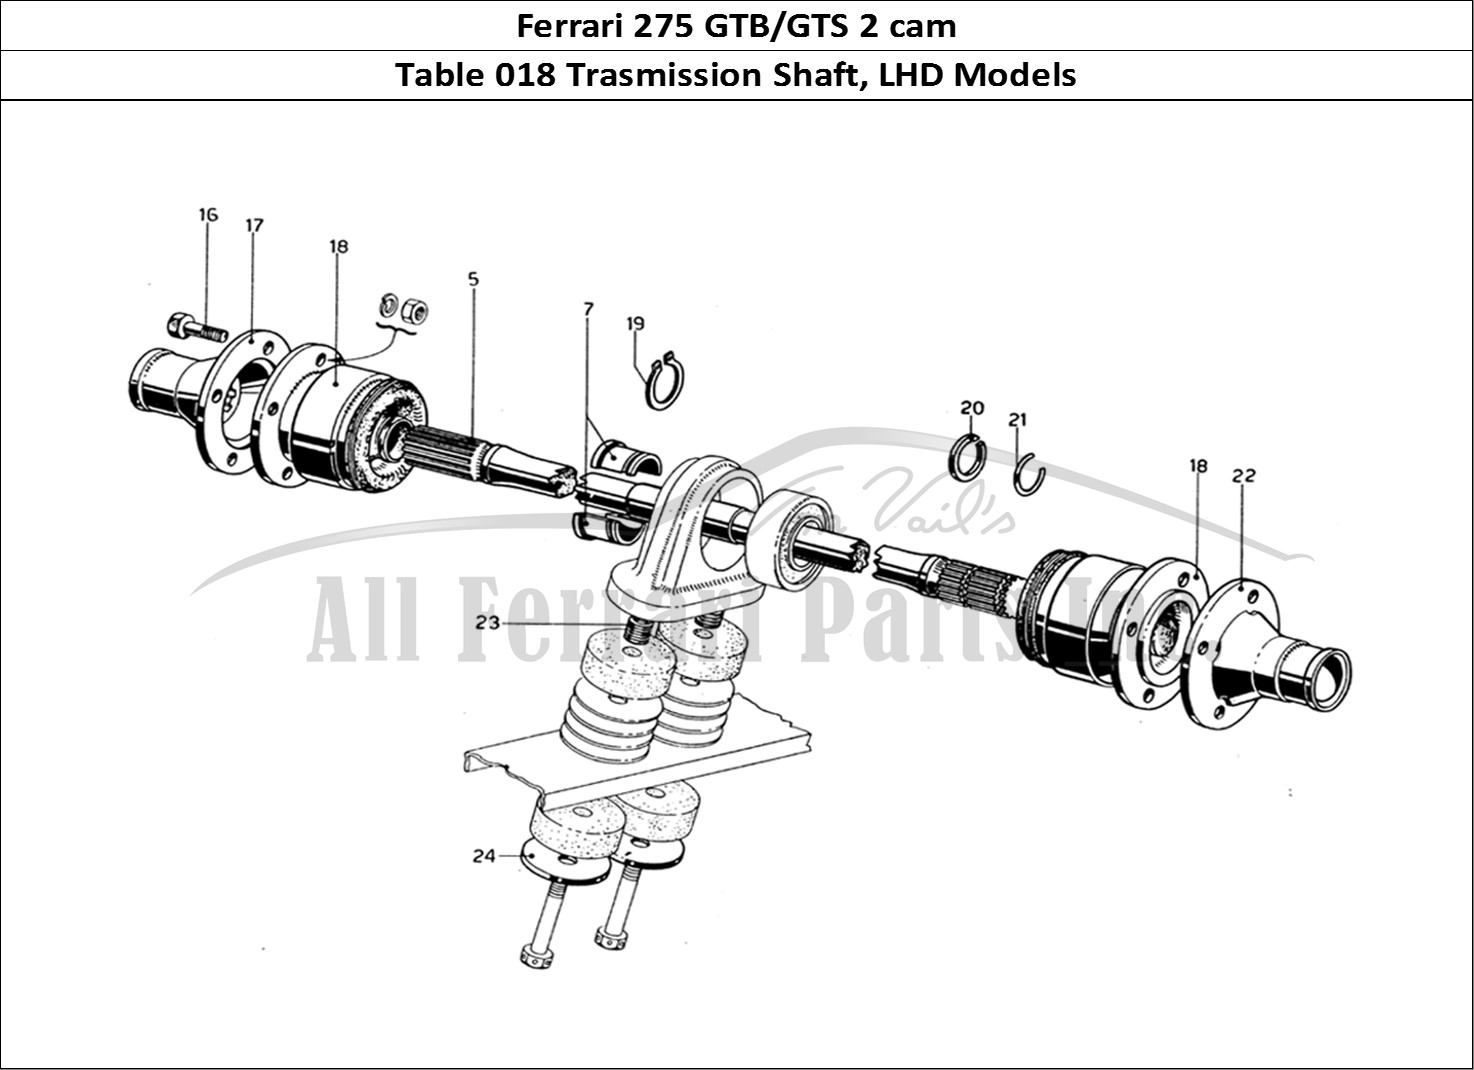 Ferrari Parts Ferrari 275 GTB/GTS 2 cam Page 018 Trasmission Shaft - LHD m